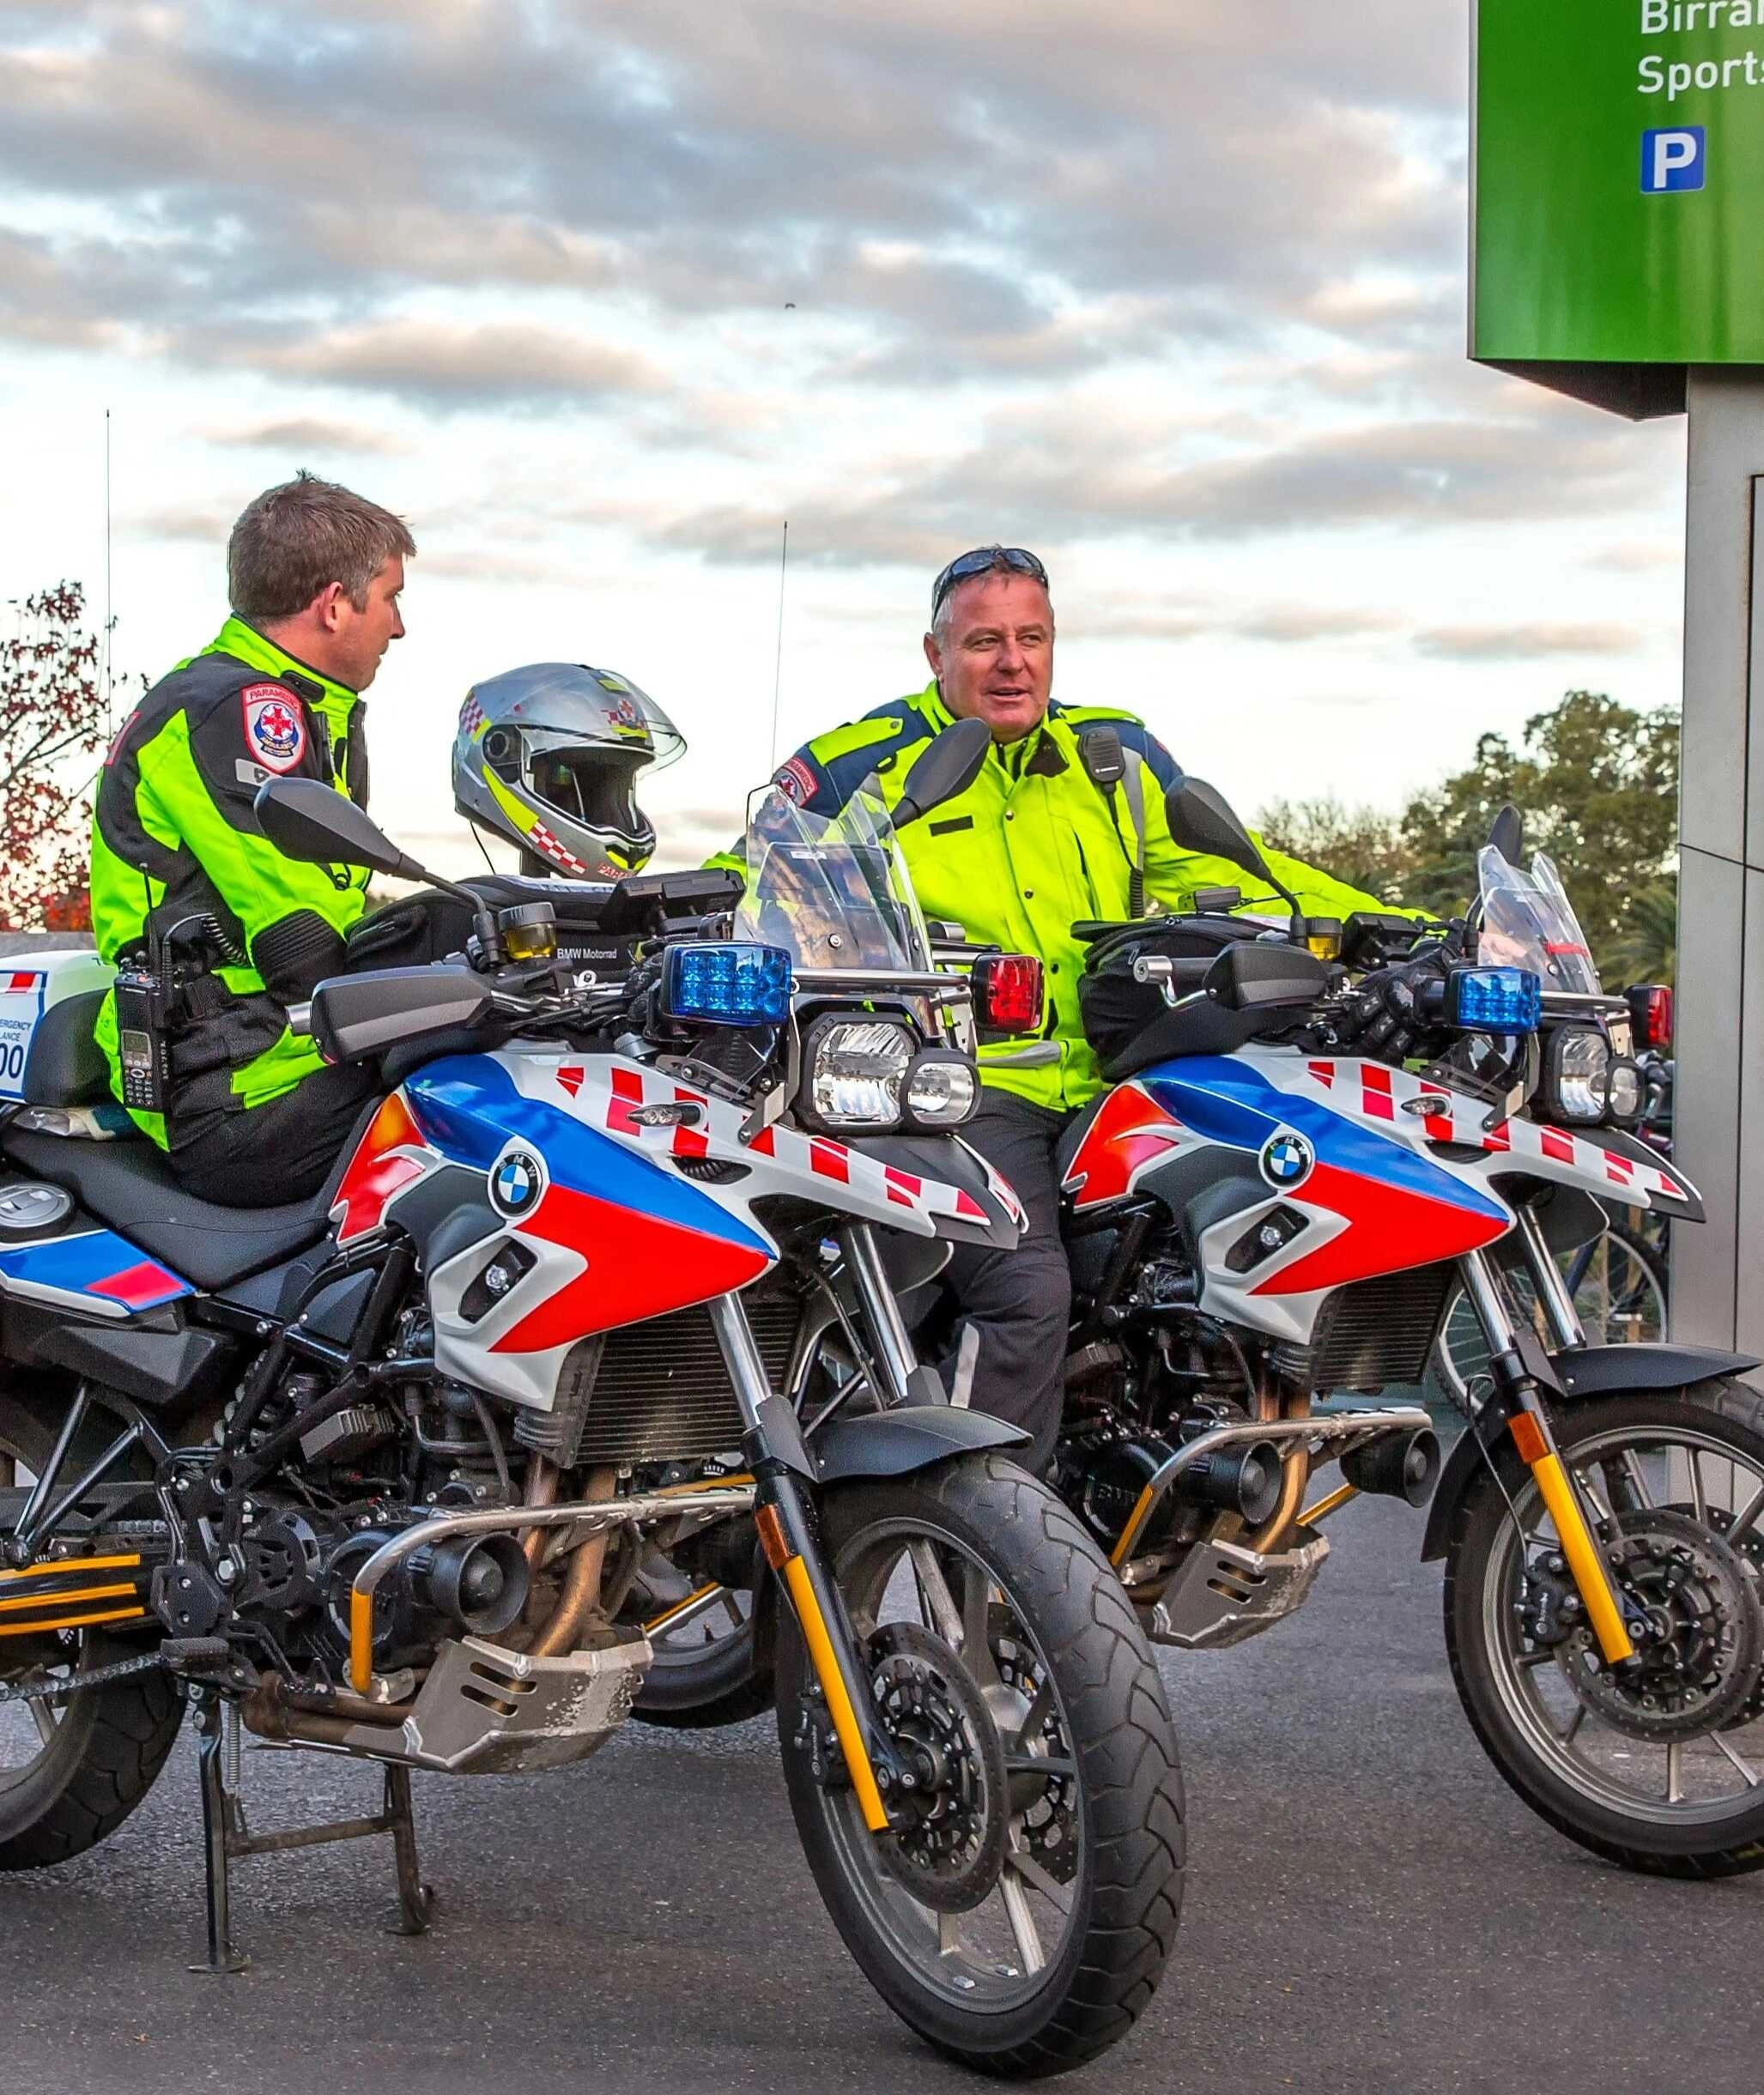 Ausstattung der Krad-Staffel - ein ehrenamtlicher Motorrad-Einsatzdienst 